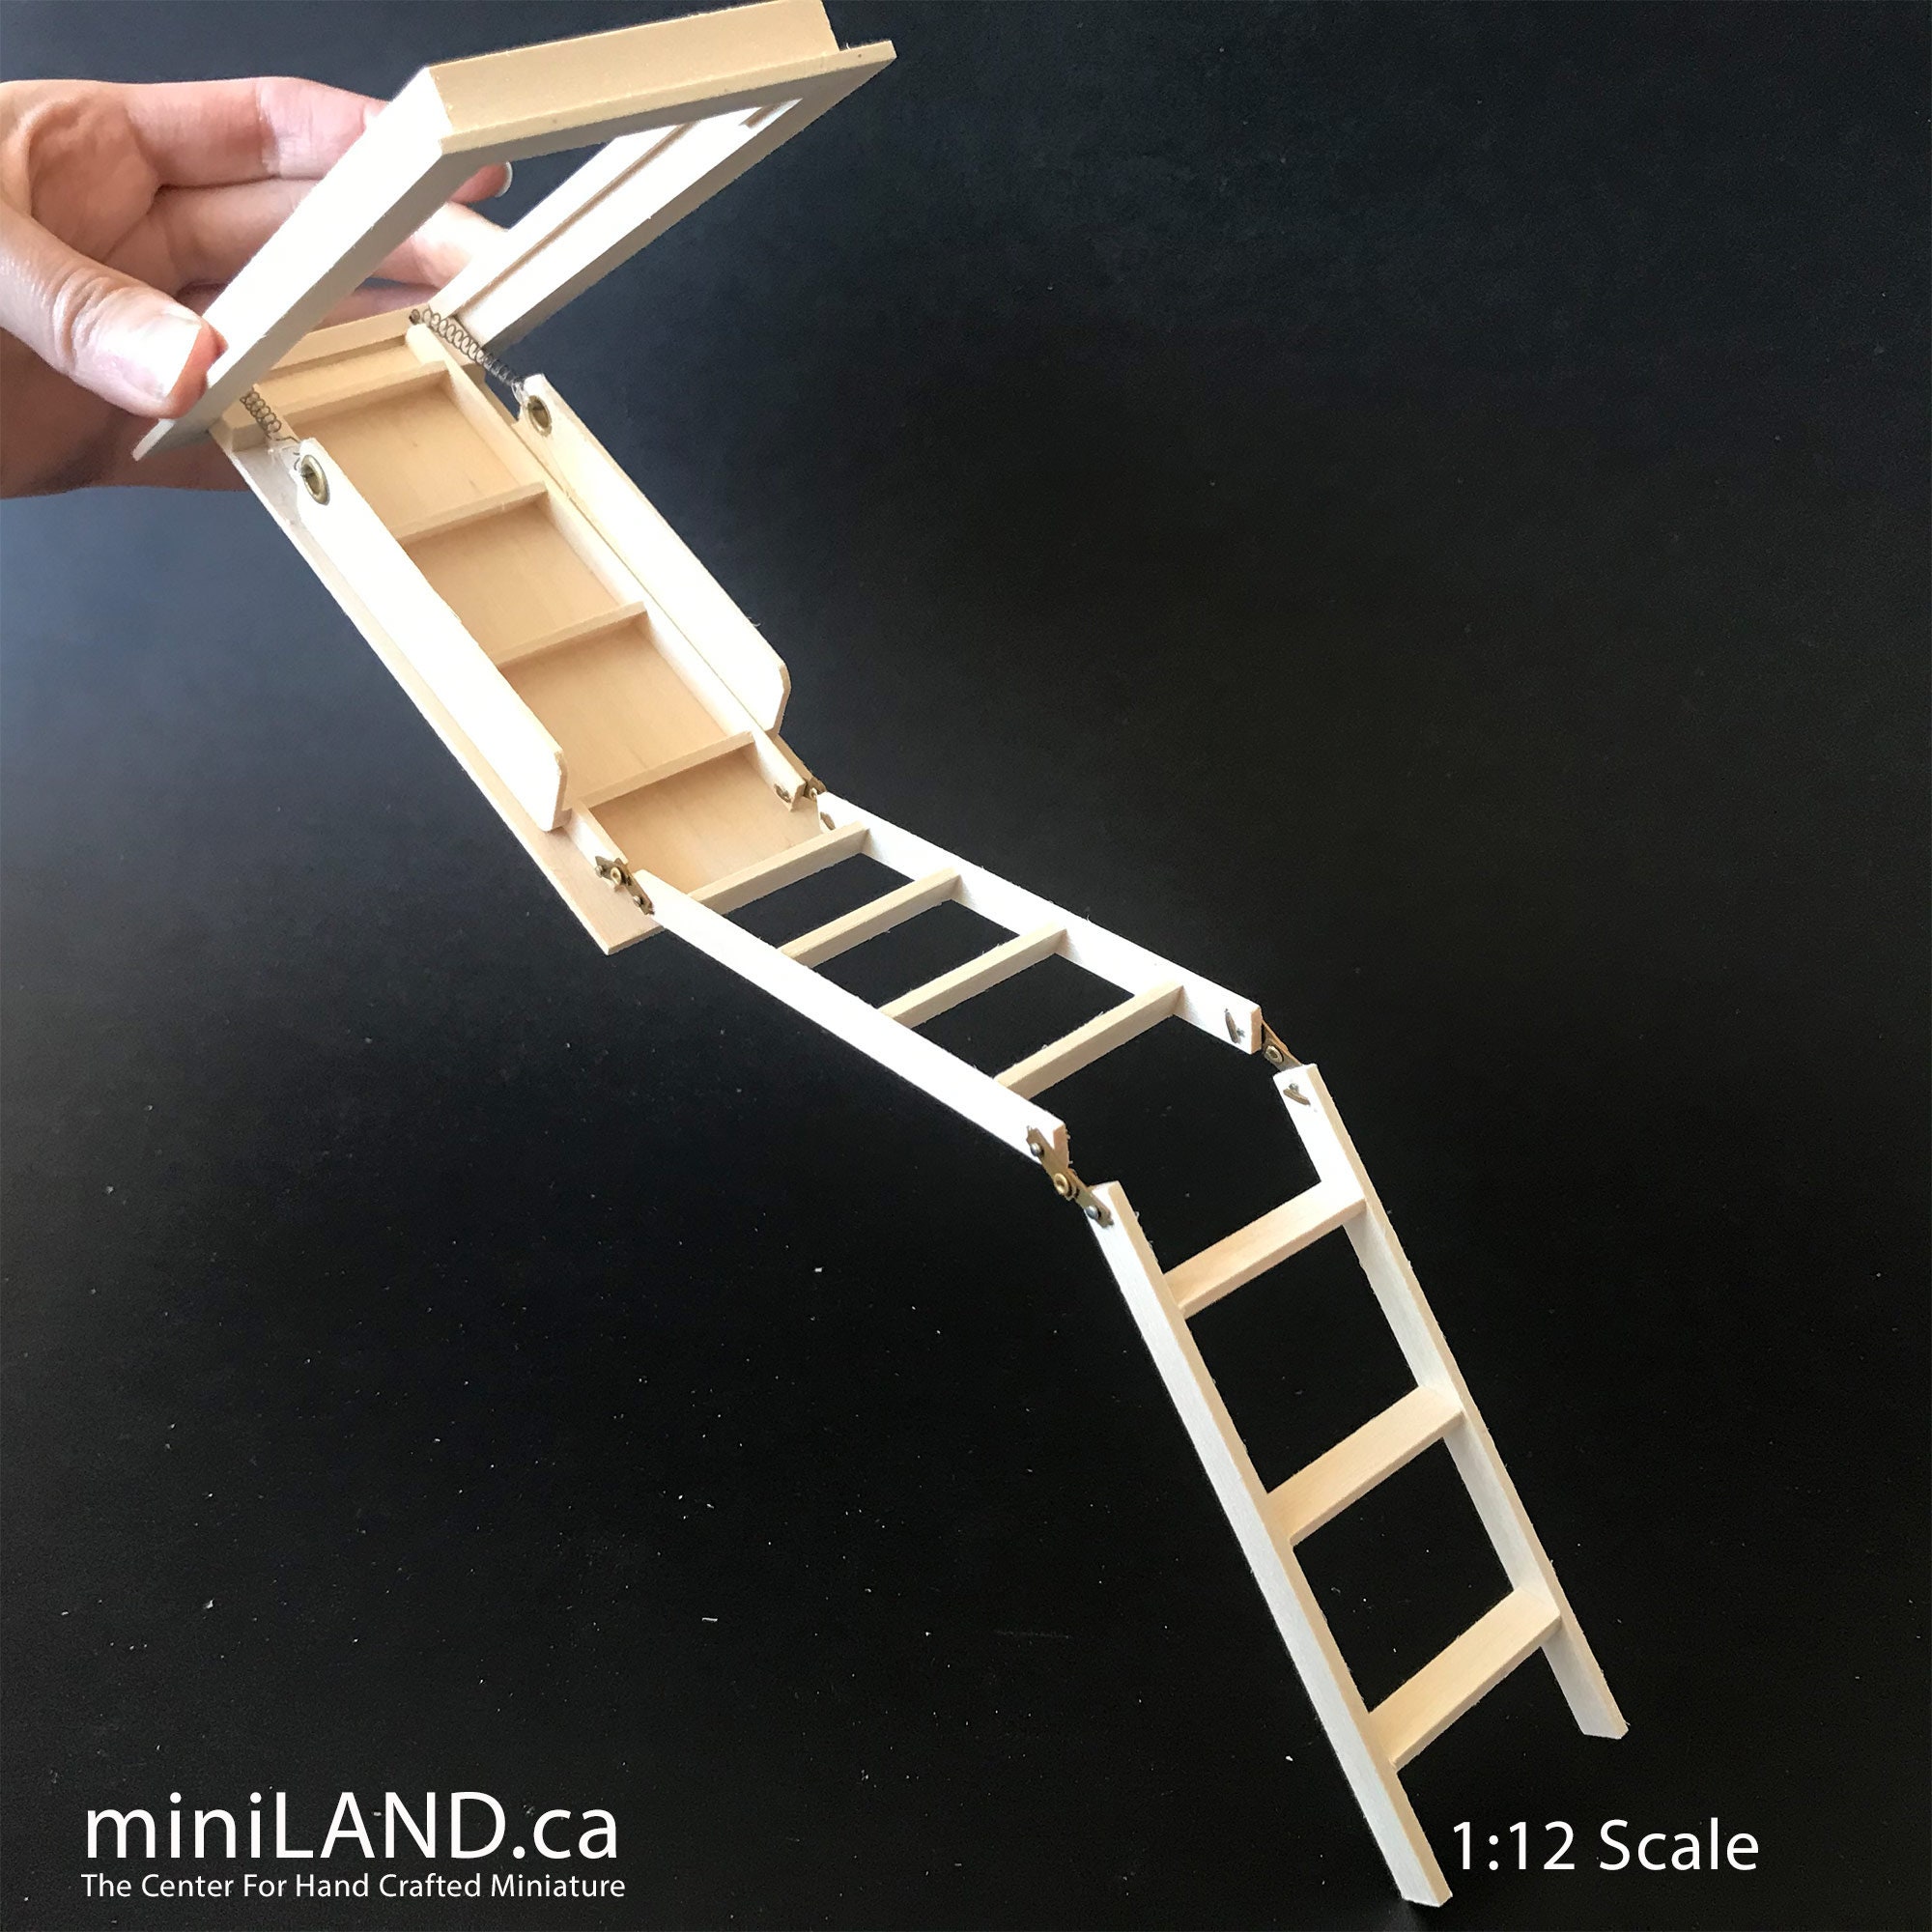 ZIP UP : échelle - escalier escamotable sur mesure